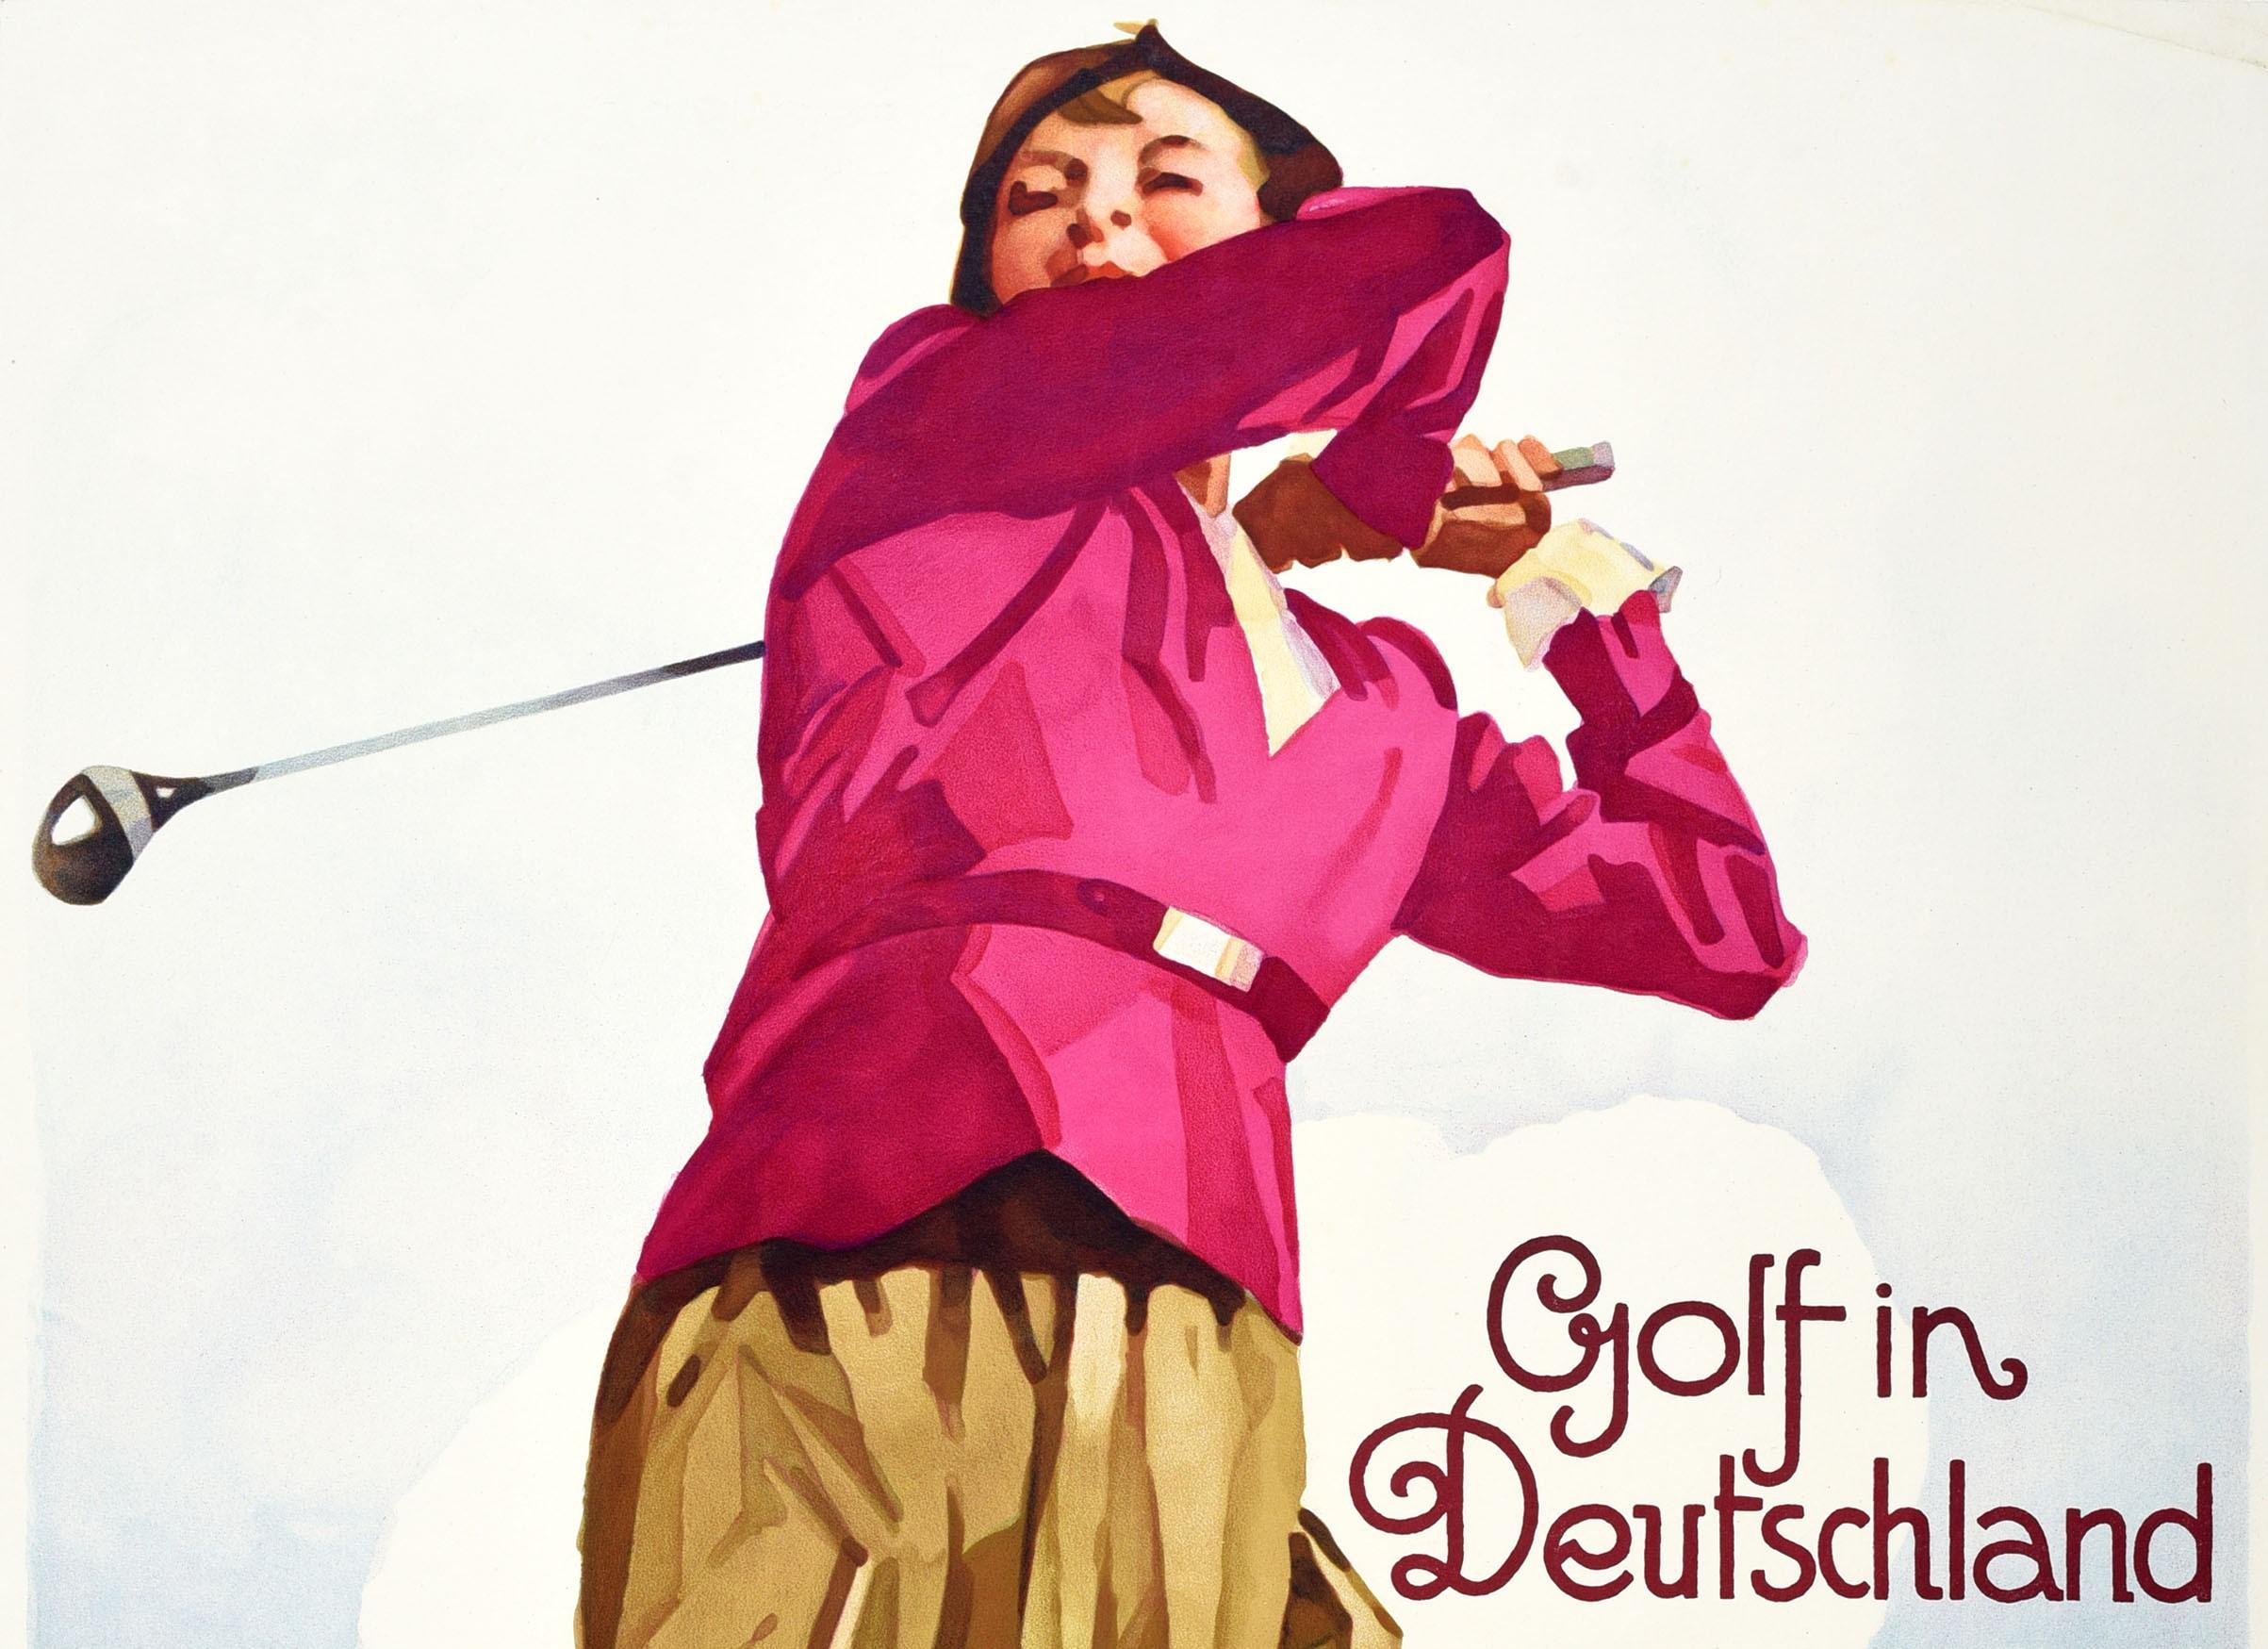 Affiche de voyage originale - Golf in Deutschland - représentant une golfeuse en plein élan sur le green, des arbres et la silhouette d'un château en ruine sur une colline à l'arrière-plan, ainsi que le texte en lettres stylisées sur le côté. Bon